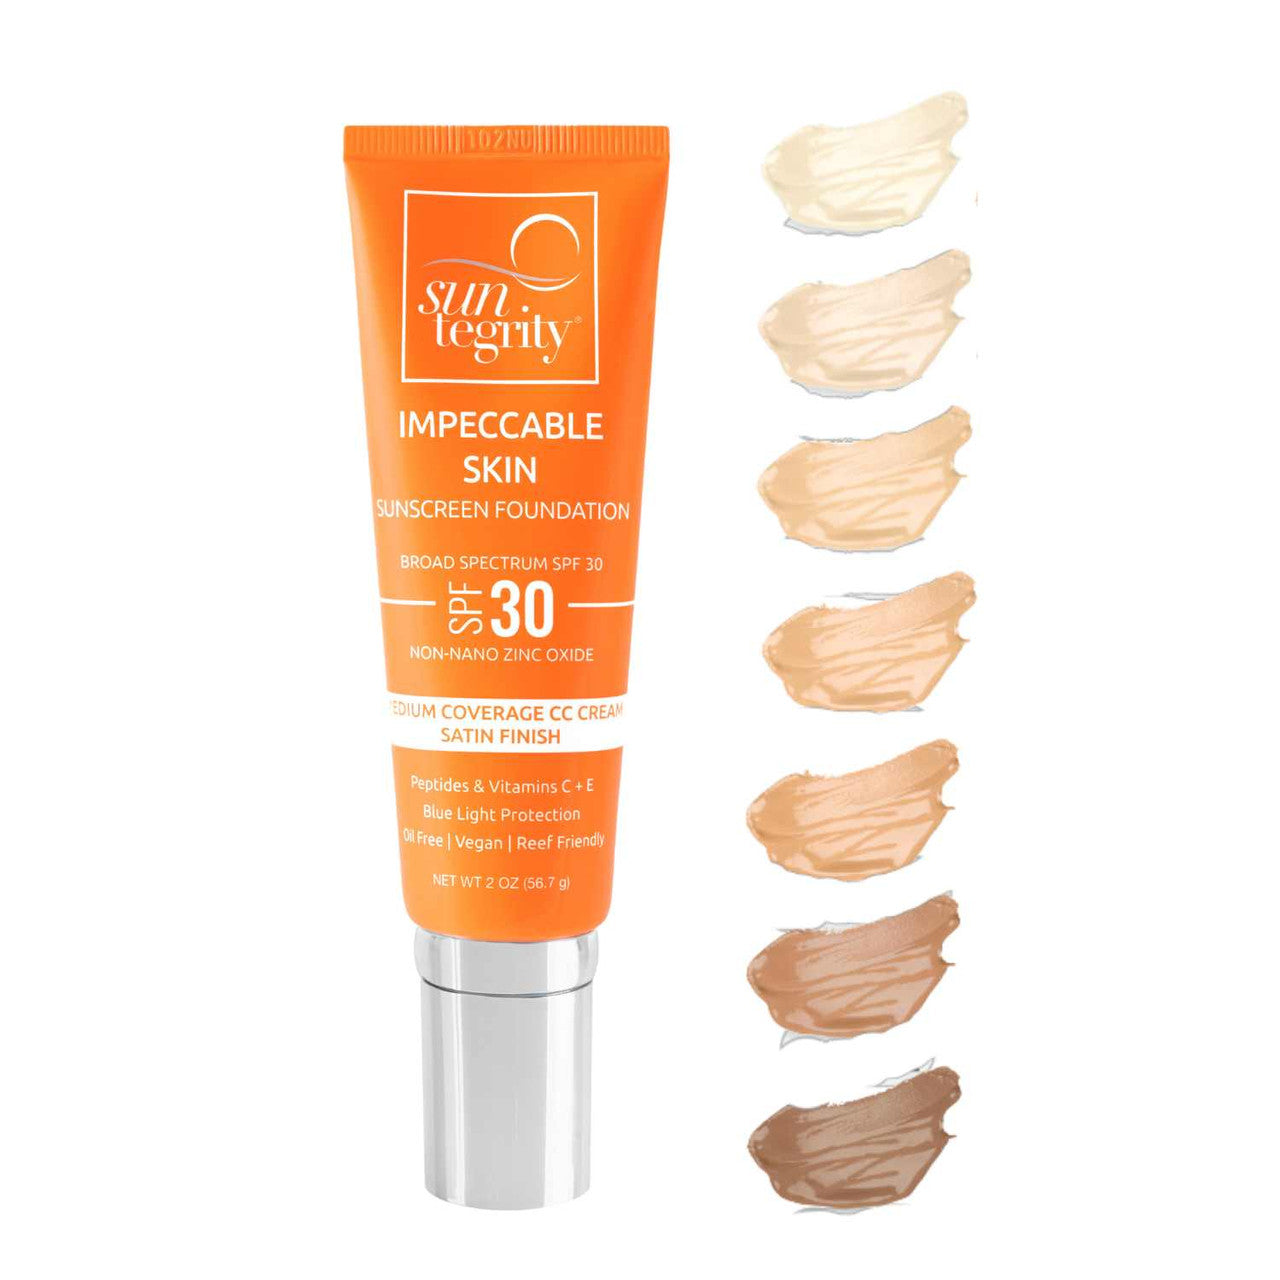 Impeccable Skin Sunscreen Foundation | SPF 30